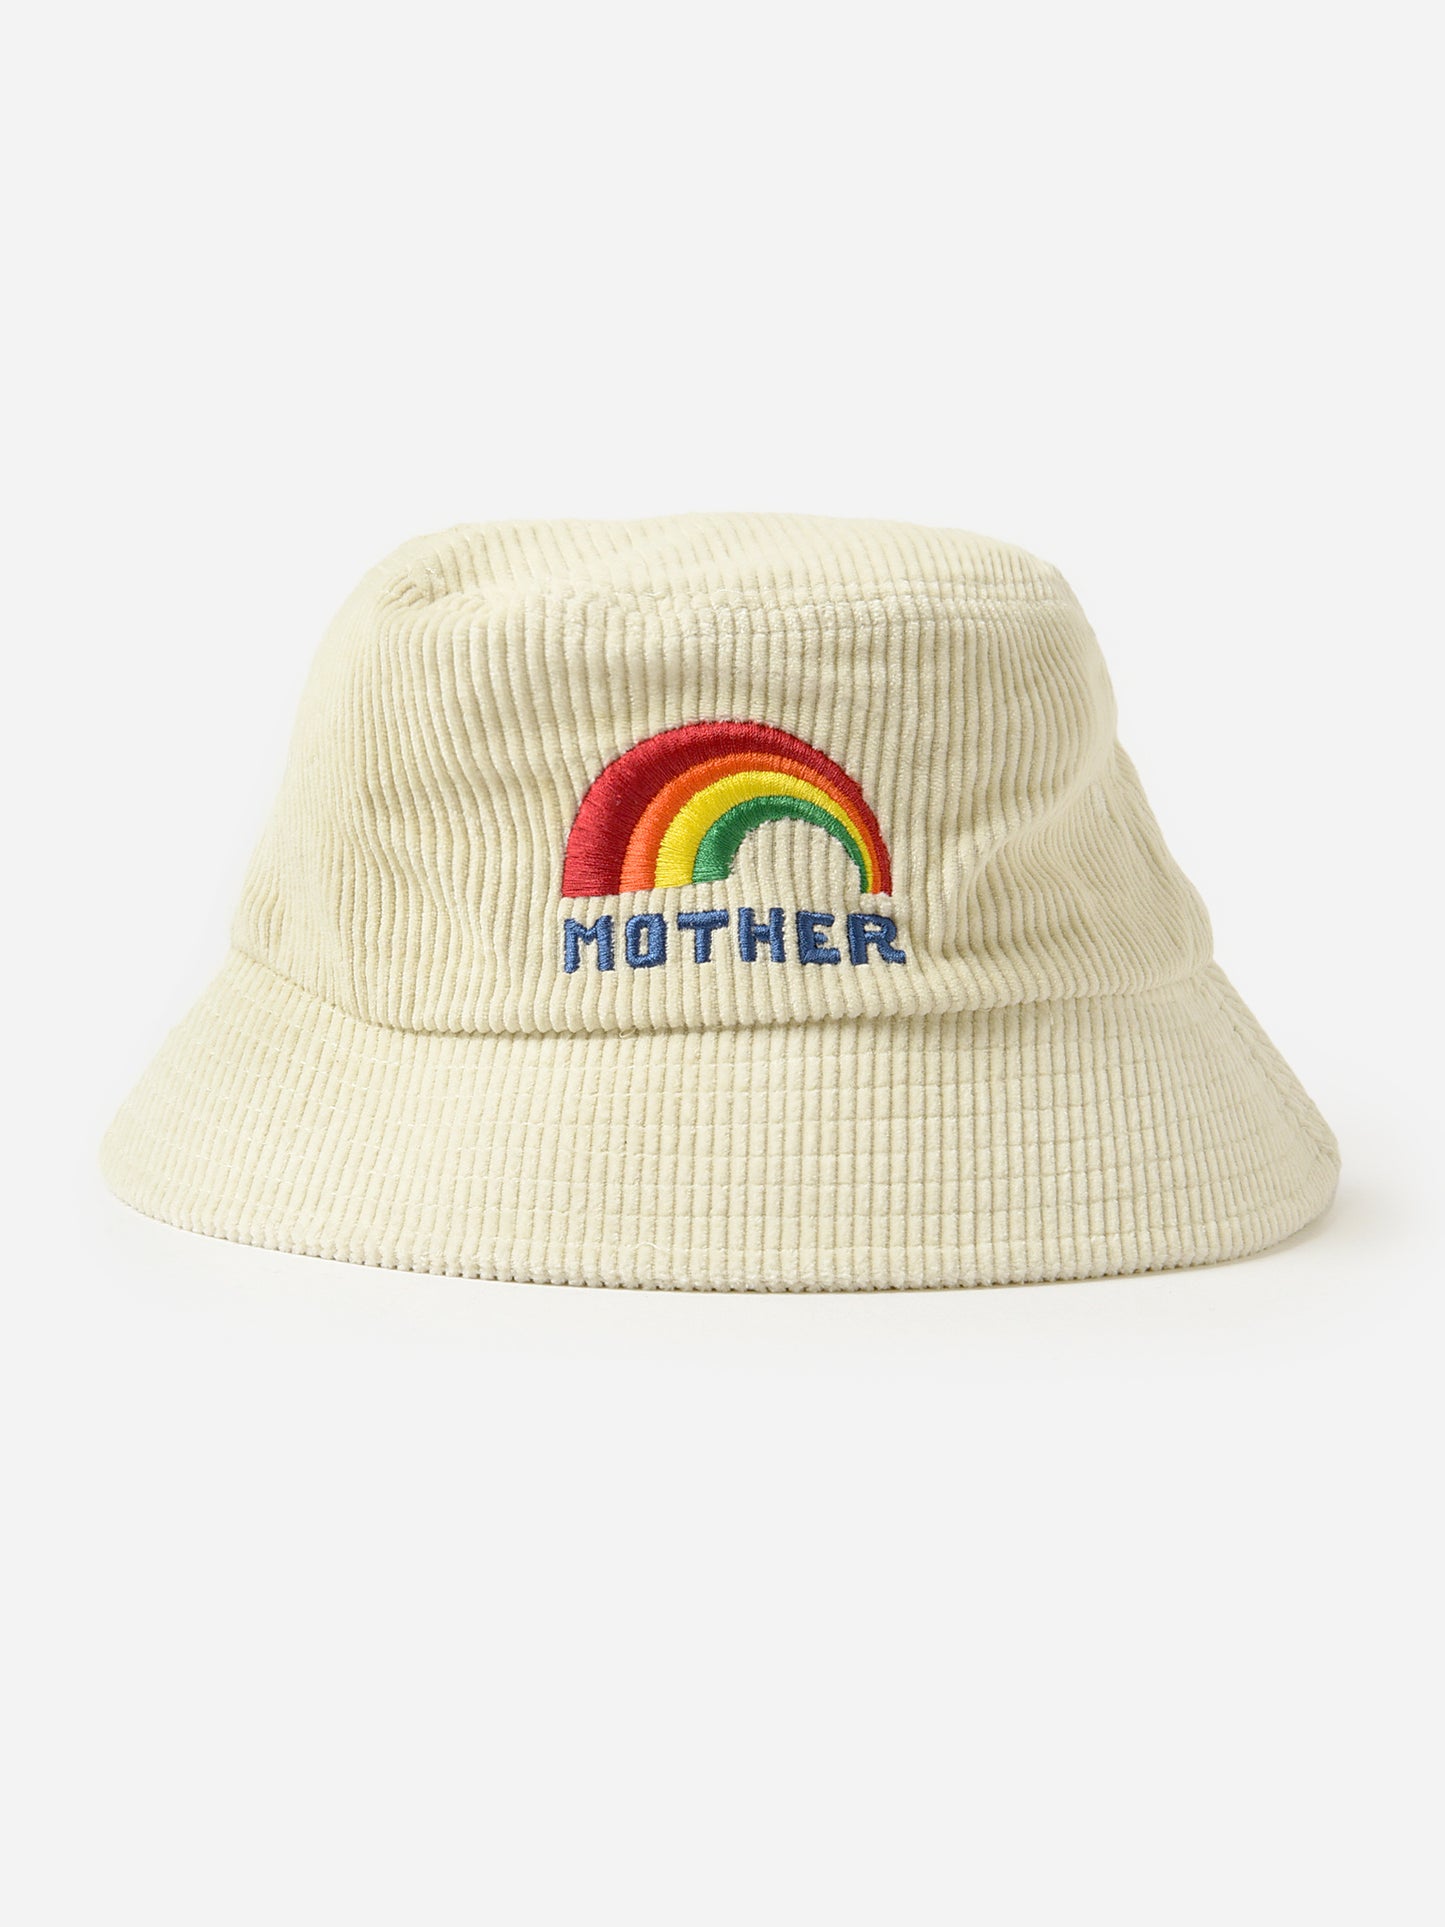 Mother Women's The Bucket List Hat